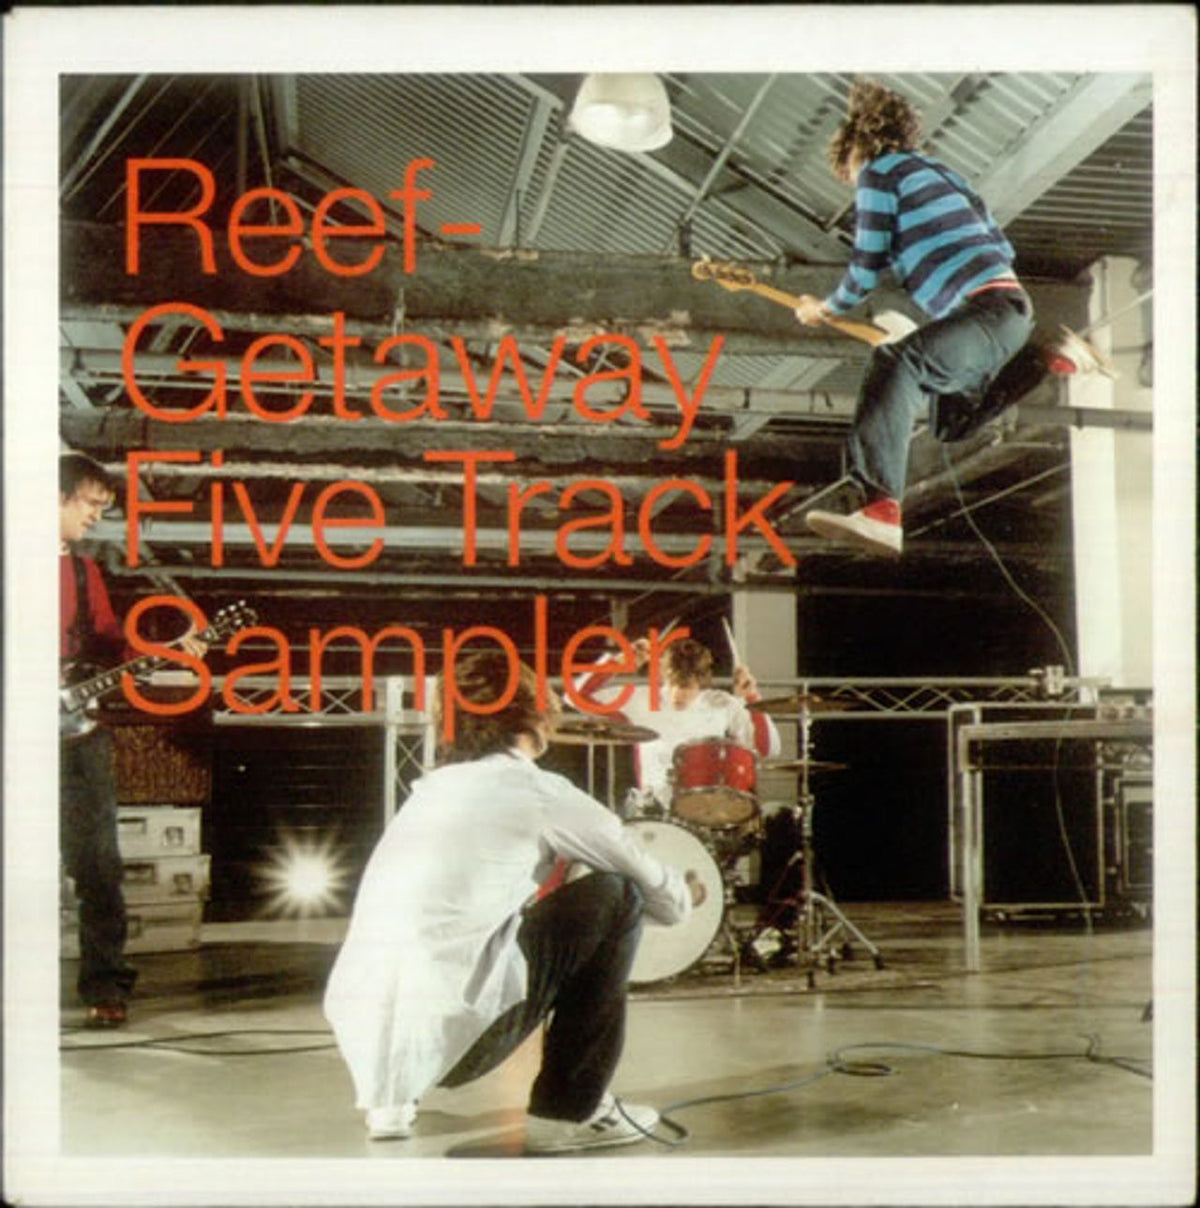 Reef Getaway Five Track Sampler UK Promo CD single — RareVinyl.com